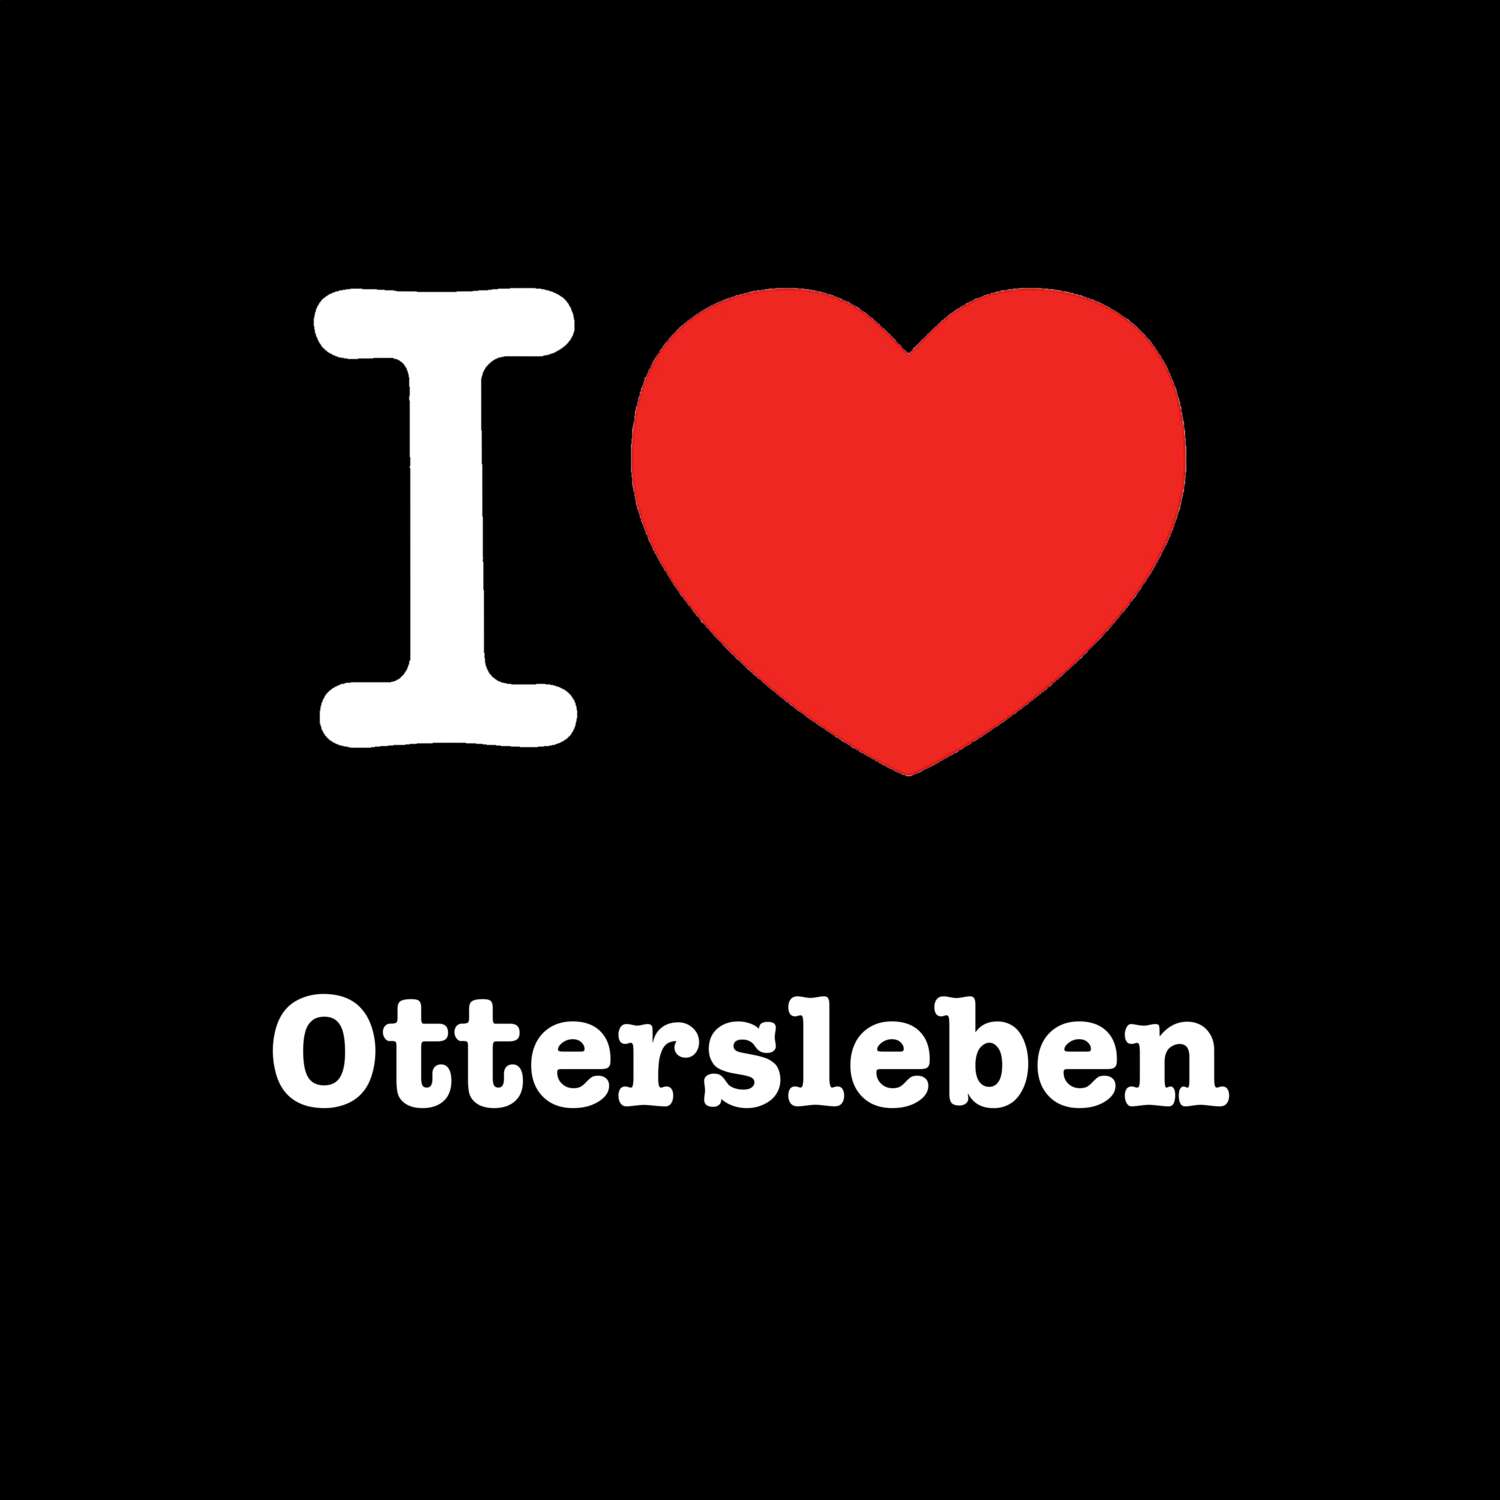 Ottersleben T-Shirt »I love«